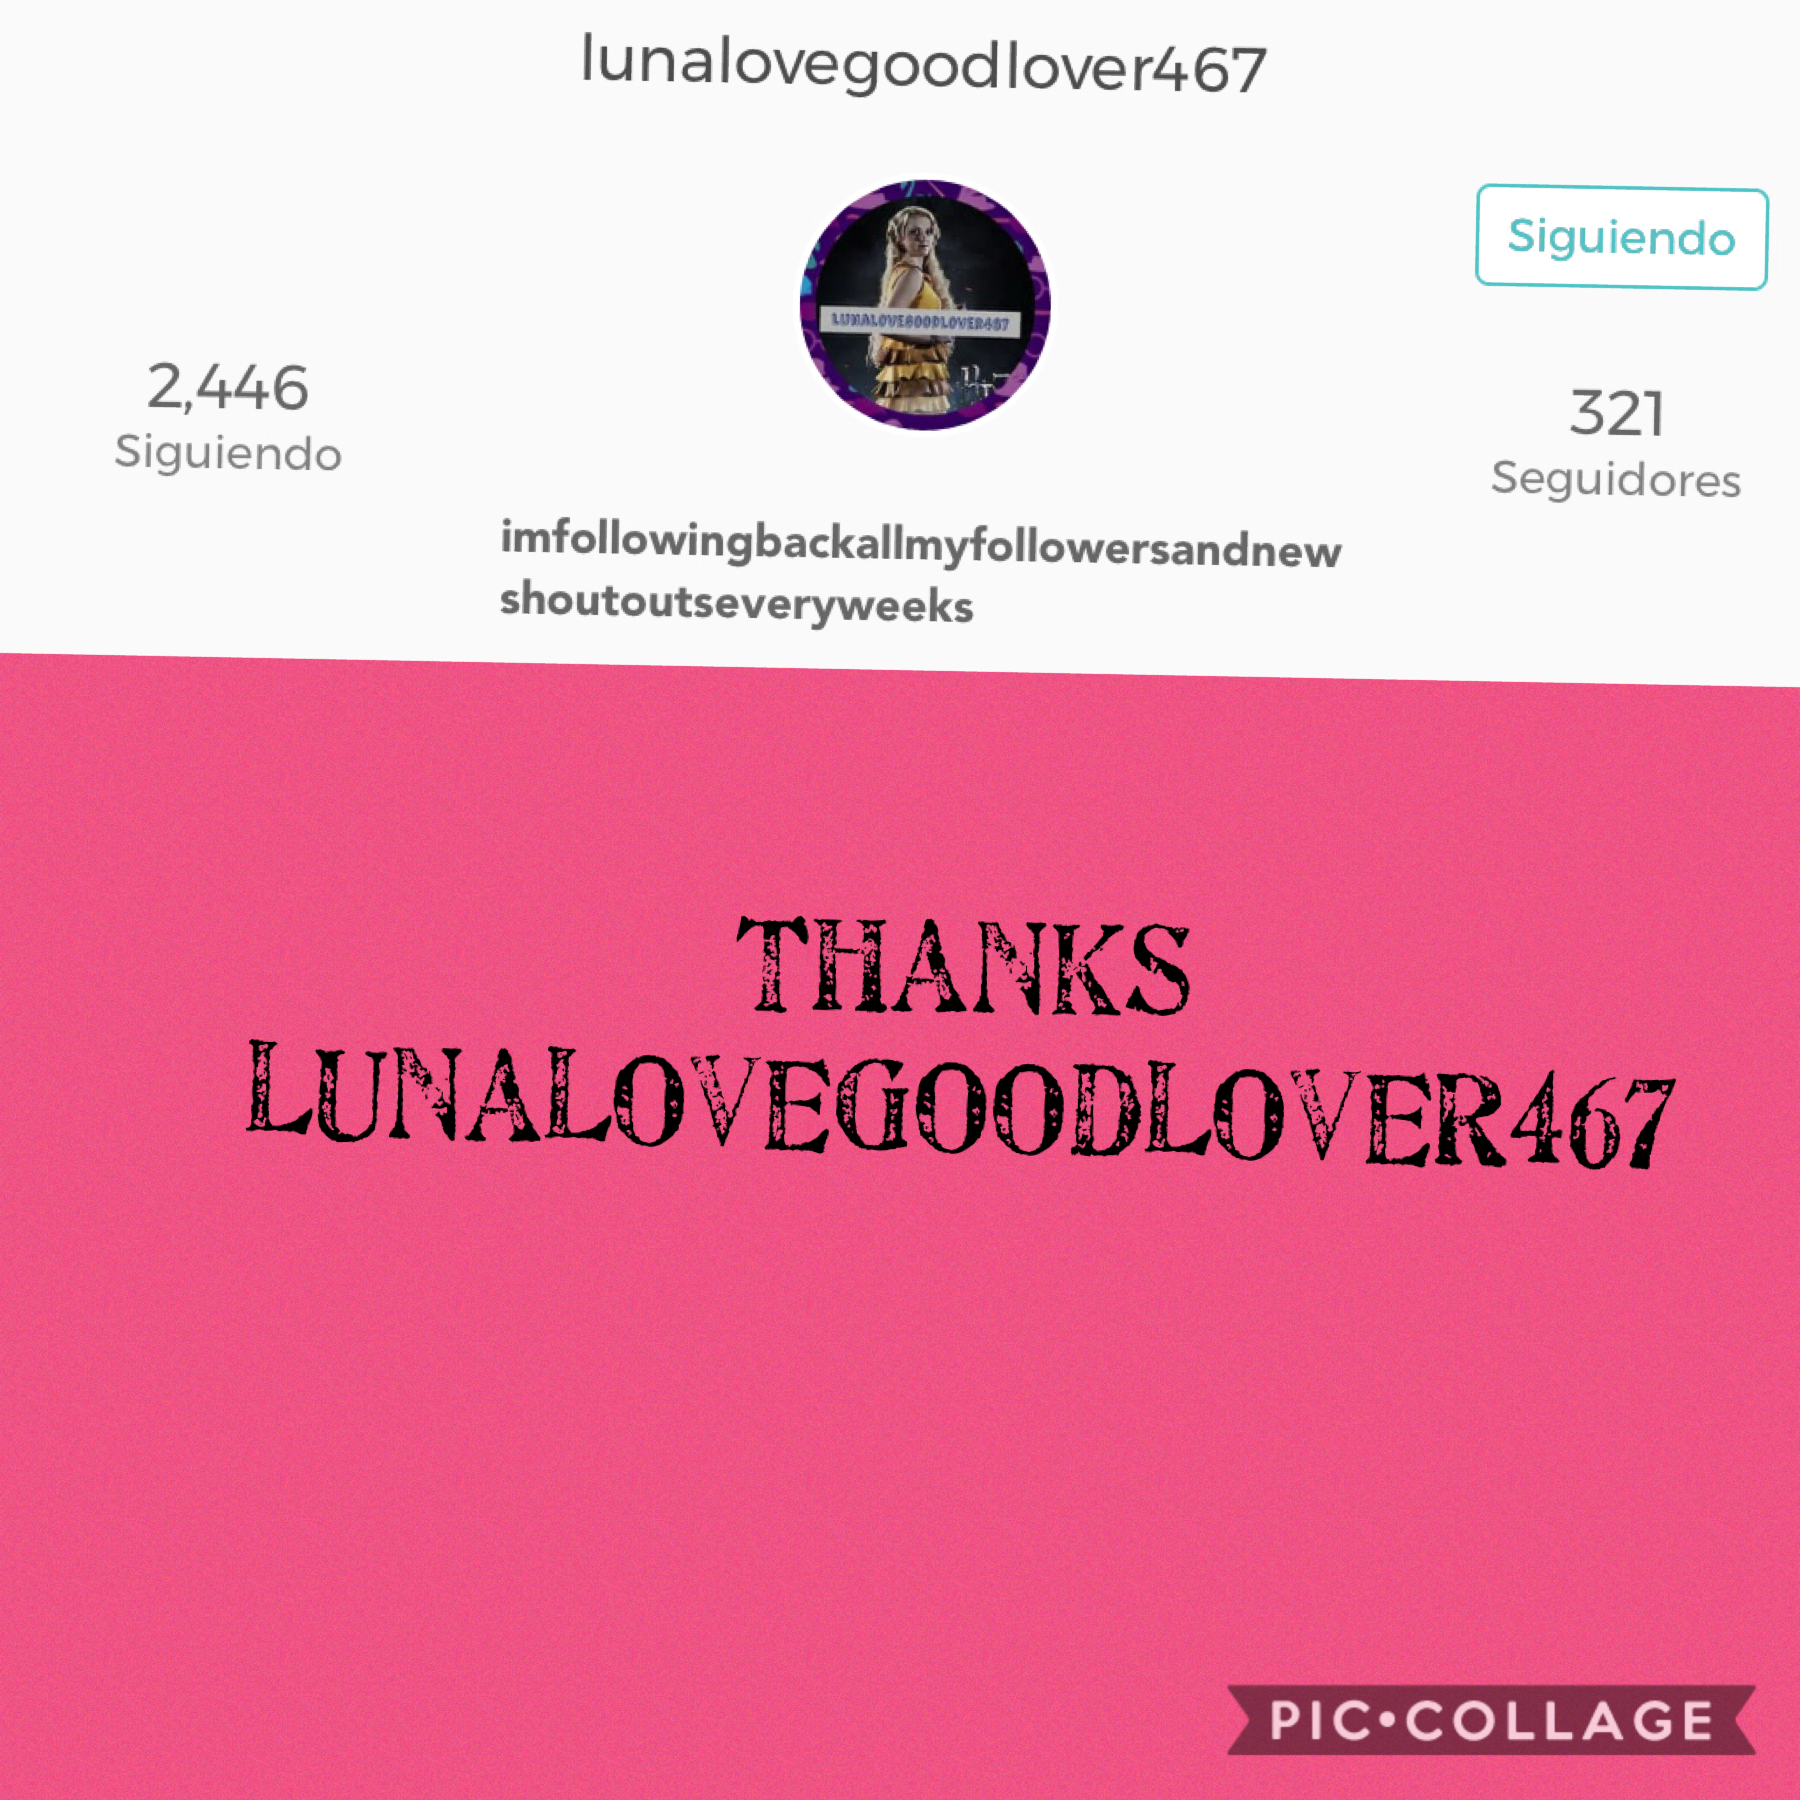 lunalovegoodlover467